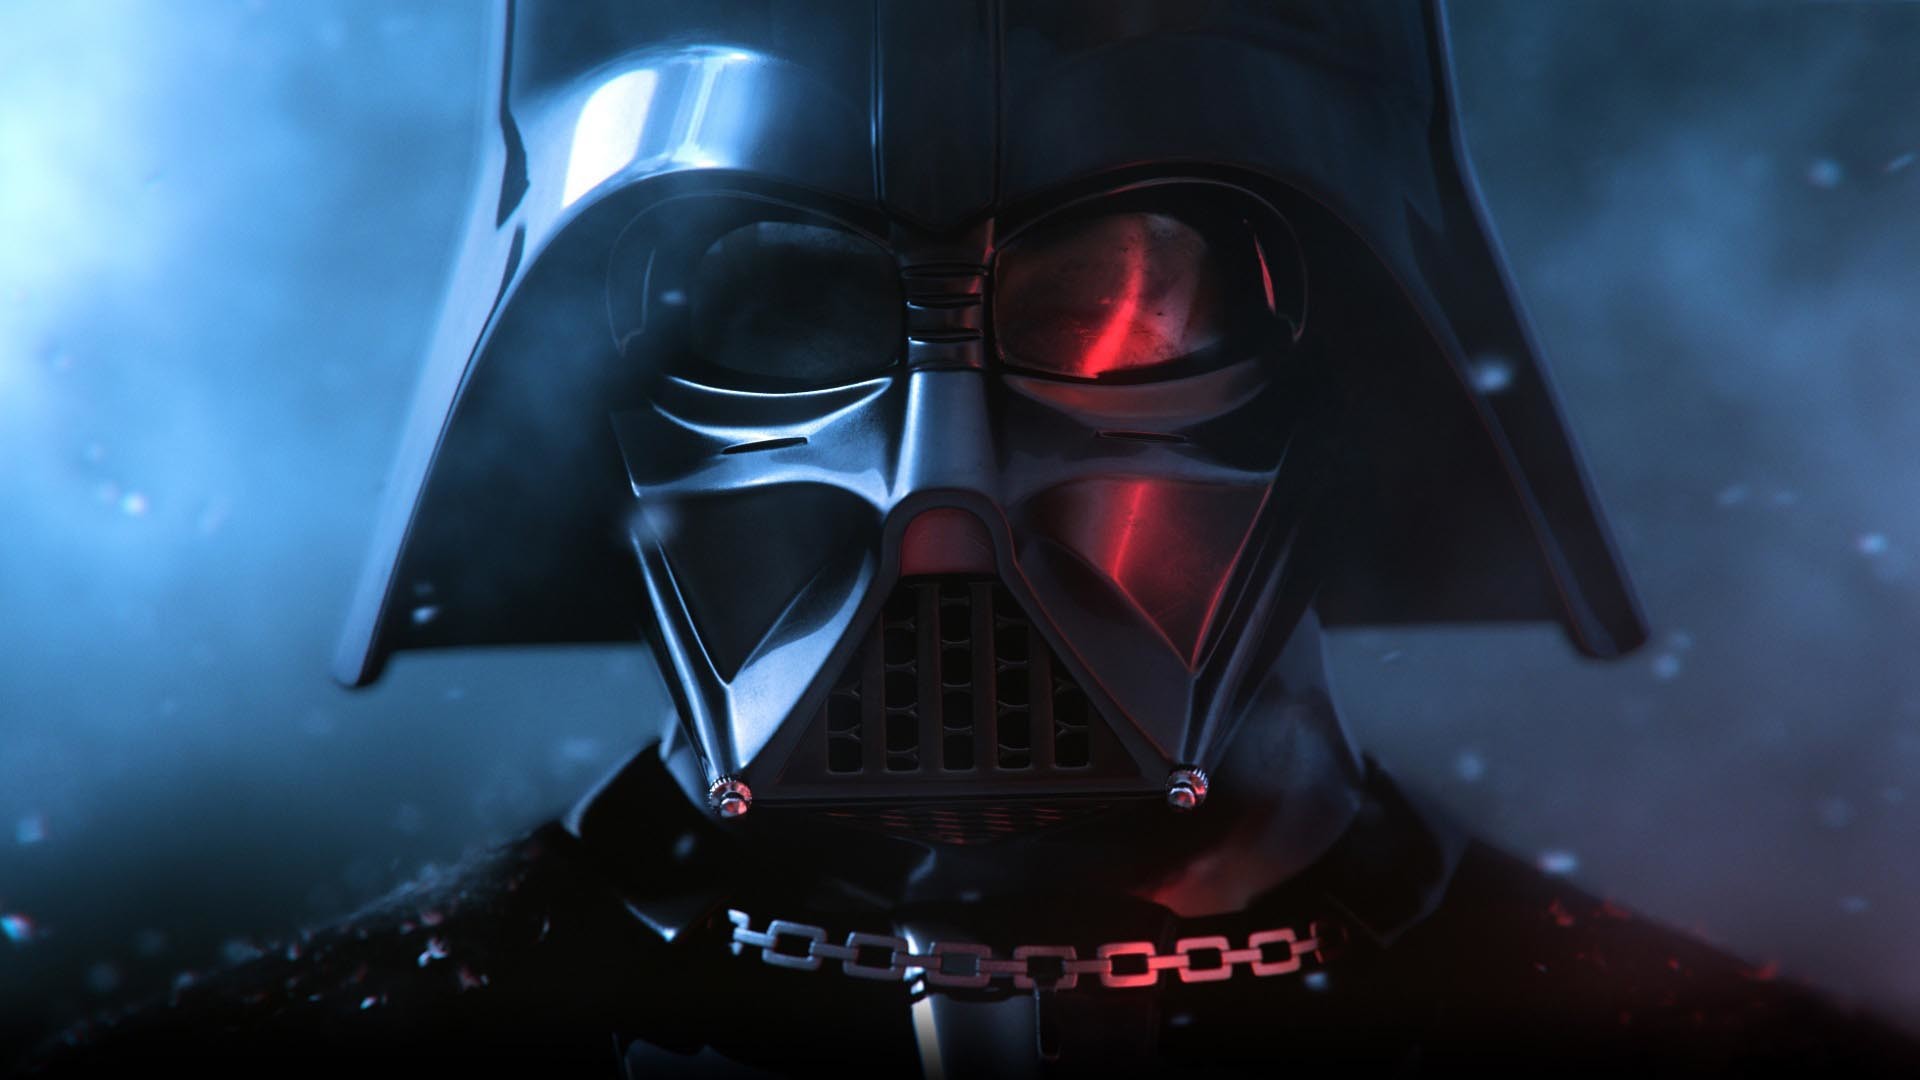 1920x1080 Star Wars - Darth Vader HD Wallpaper Â» FullHDWpp - Full HD .